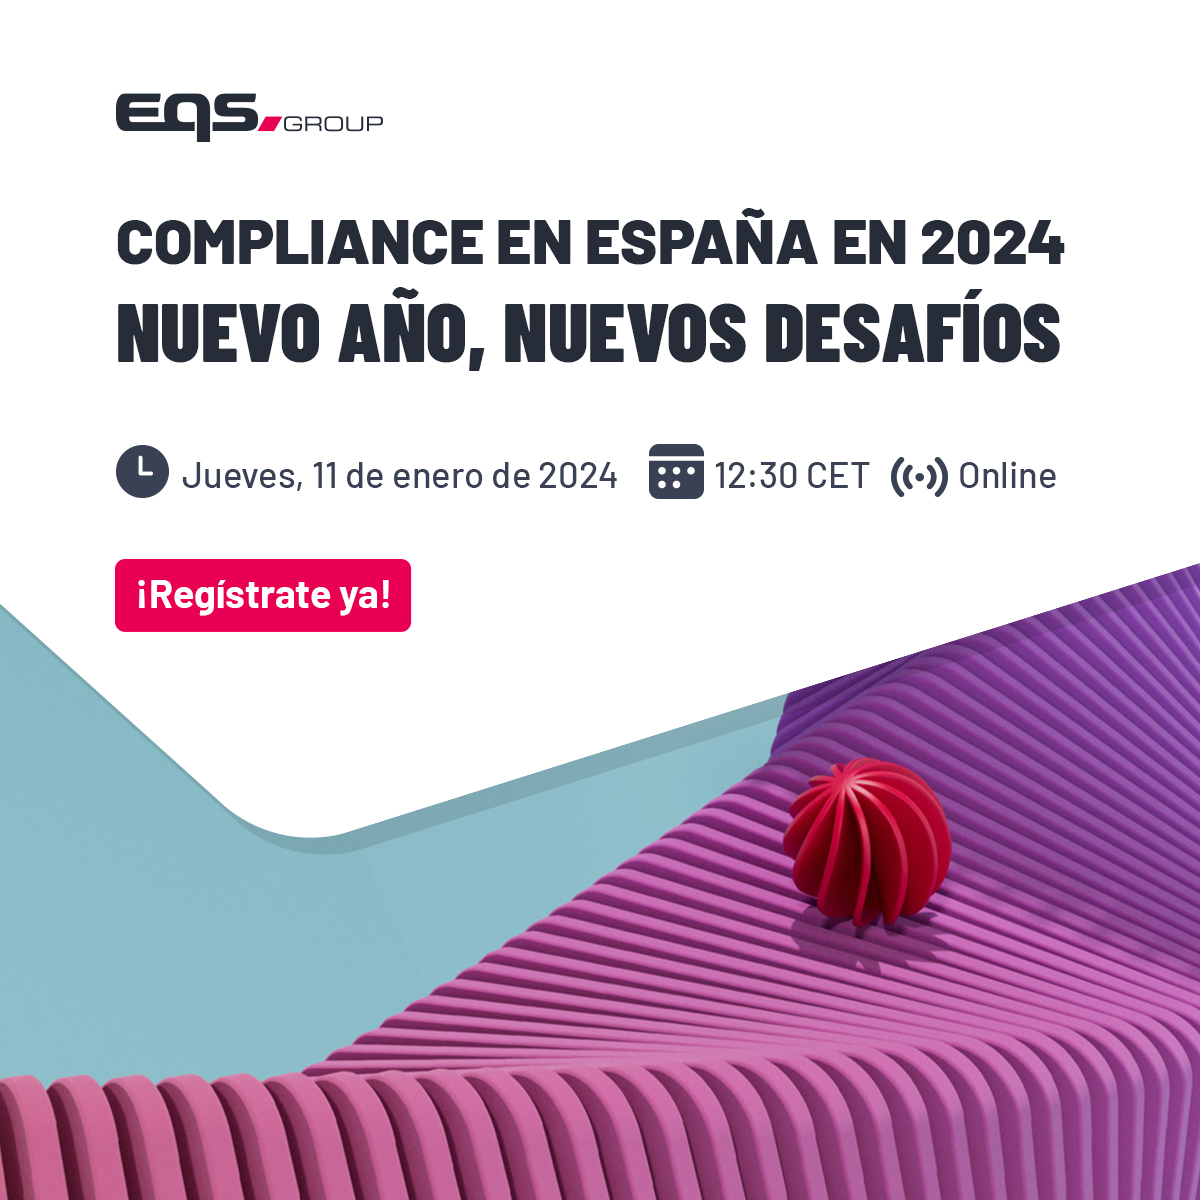 Compliance en Espana en 2024: nuevo año, nuevos desafíos